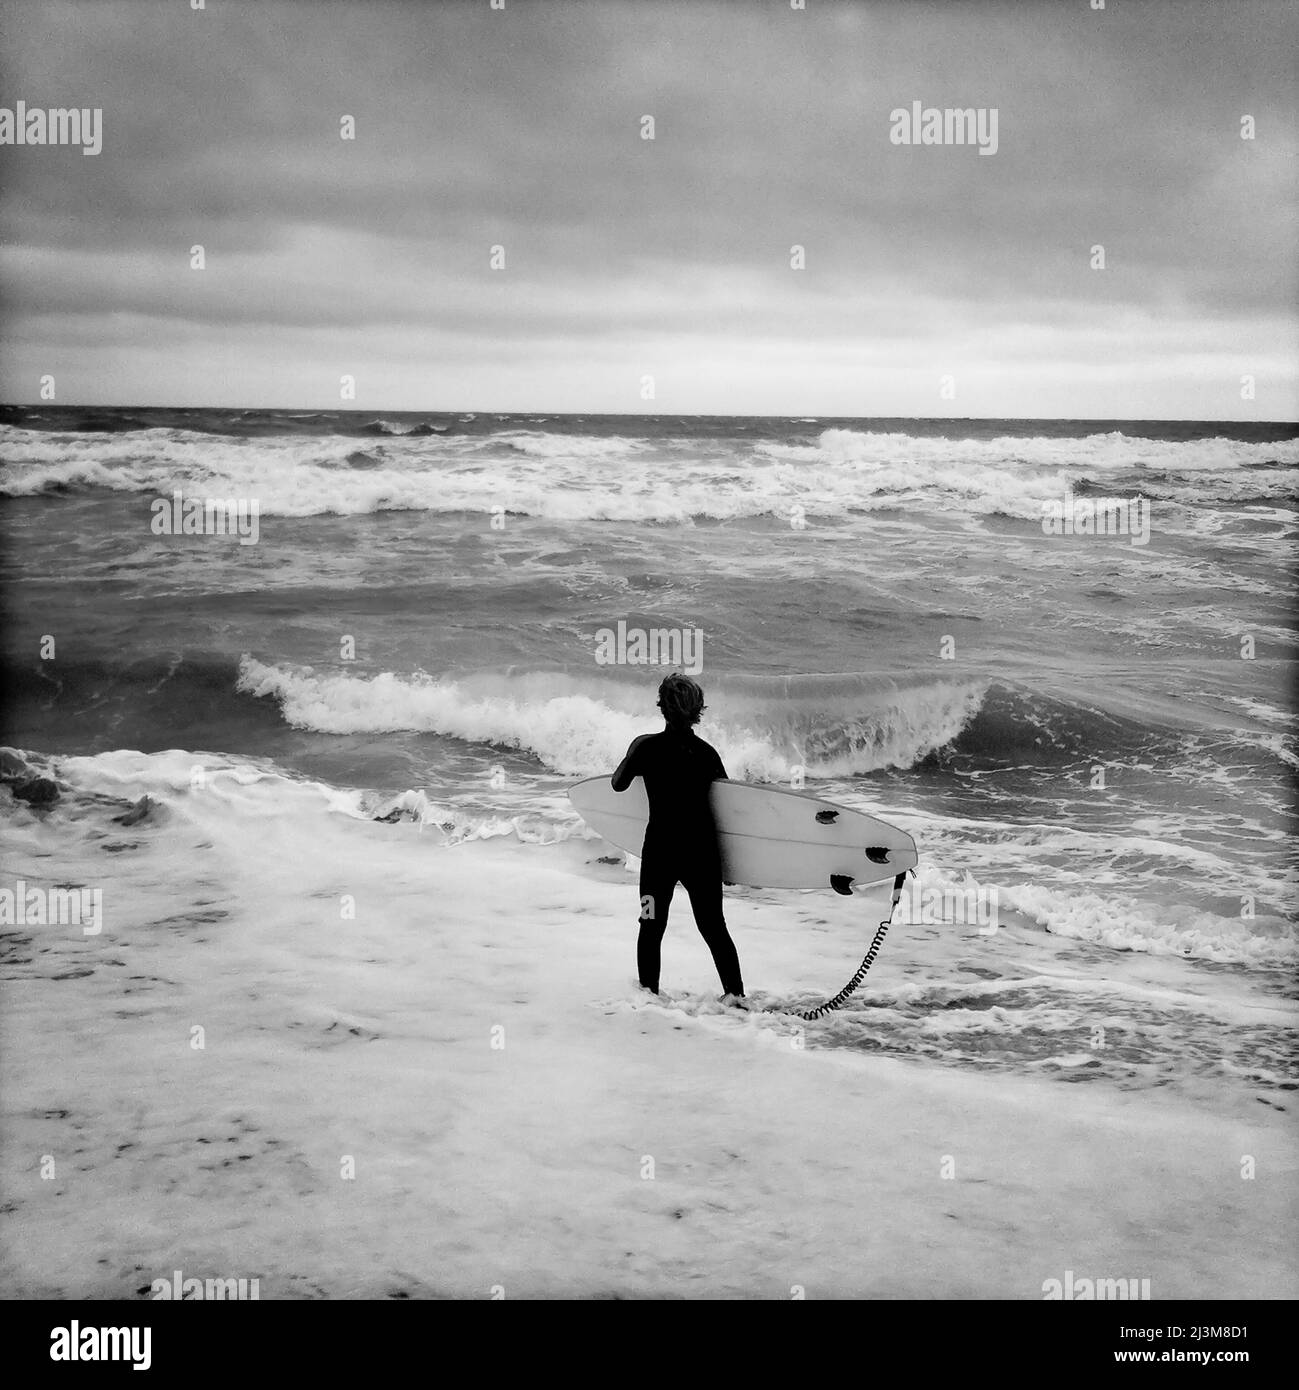 Ein 12-jähriger Junge starrt auf unordentliche Brandung und wartet auf seine Chance, auf seinem Surfbrett zu steigen.; Nags Head, North Carolina. Stockfoto